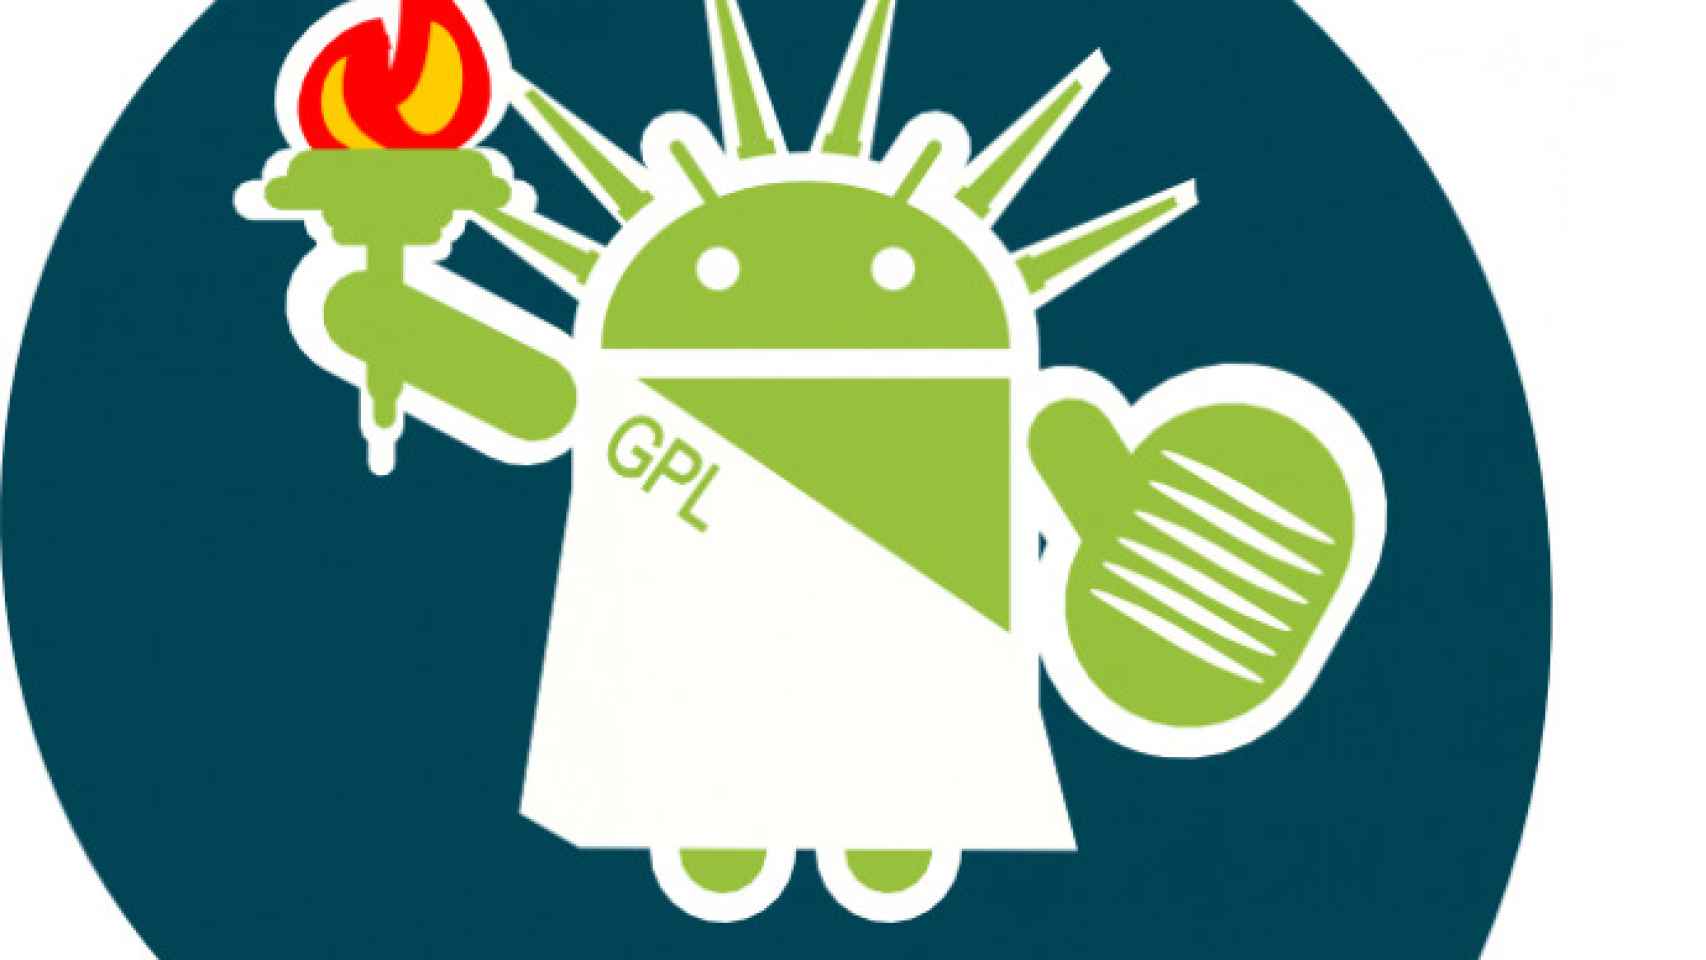 Libera tu smartphone Android y hazlo libre 100%